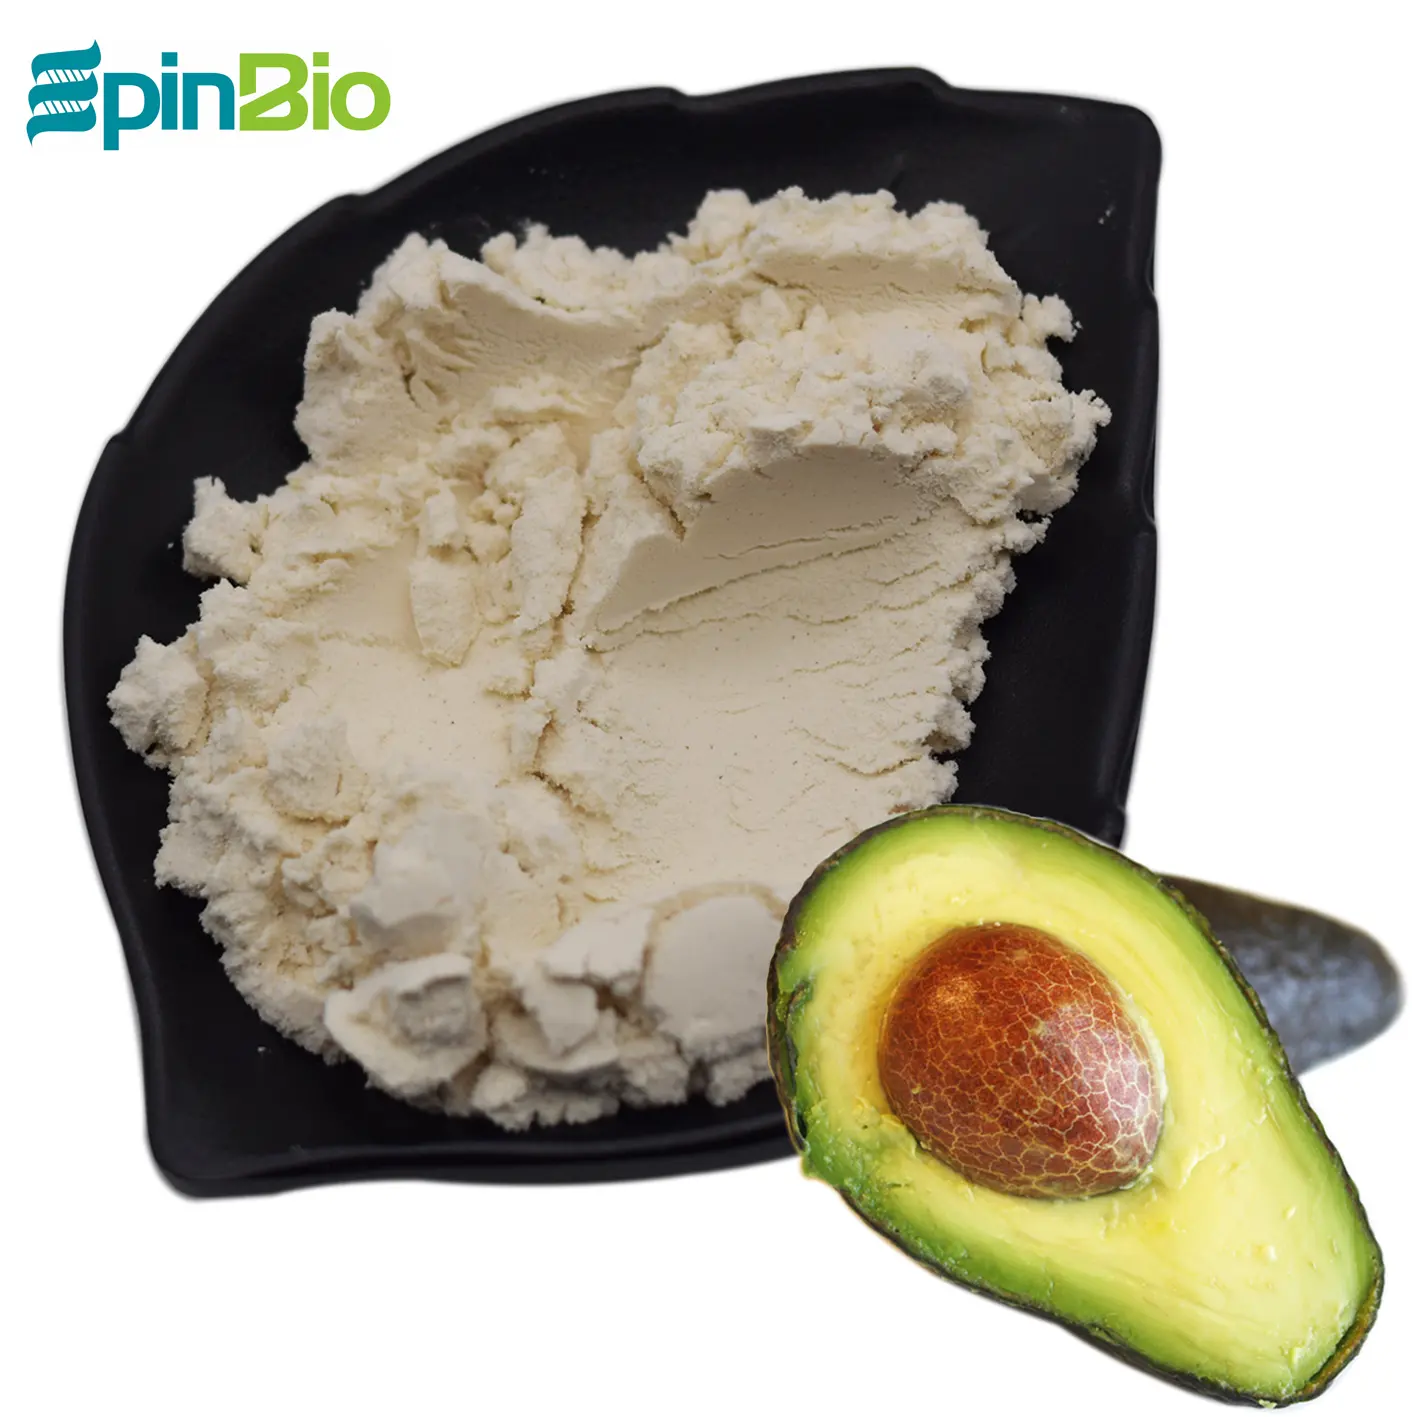 Epinbio provides high quality 100% pure avocado fruit powder